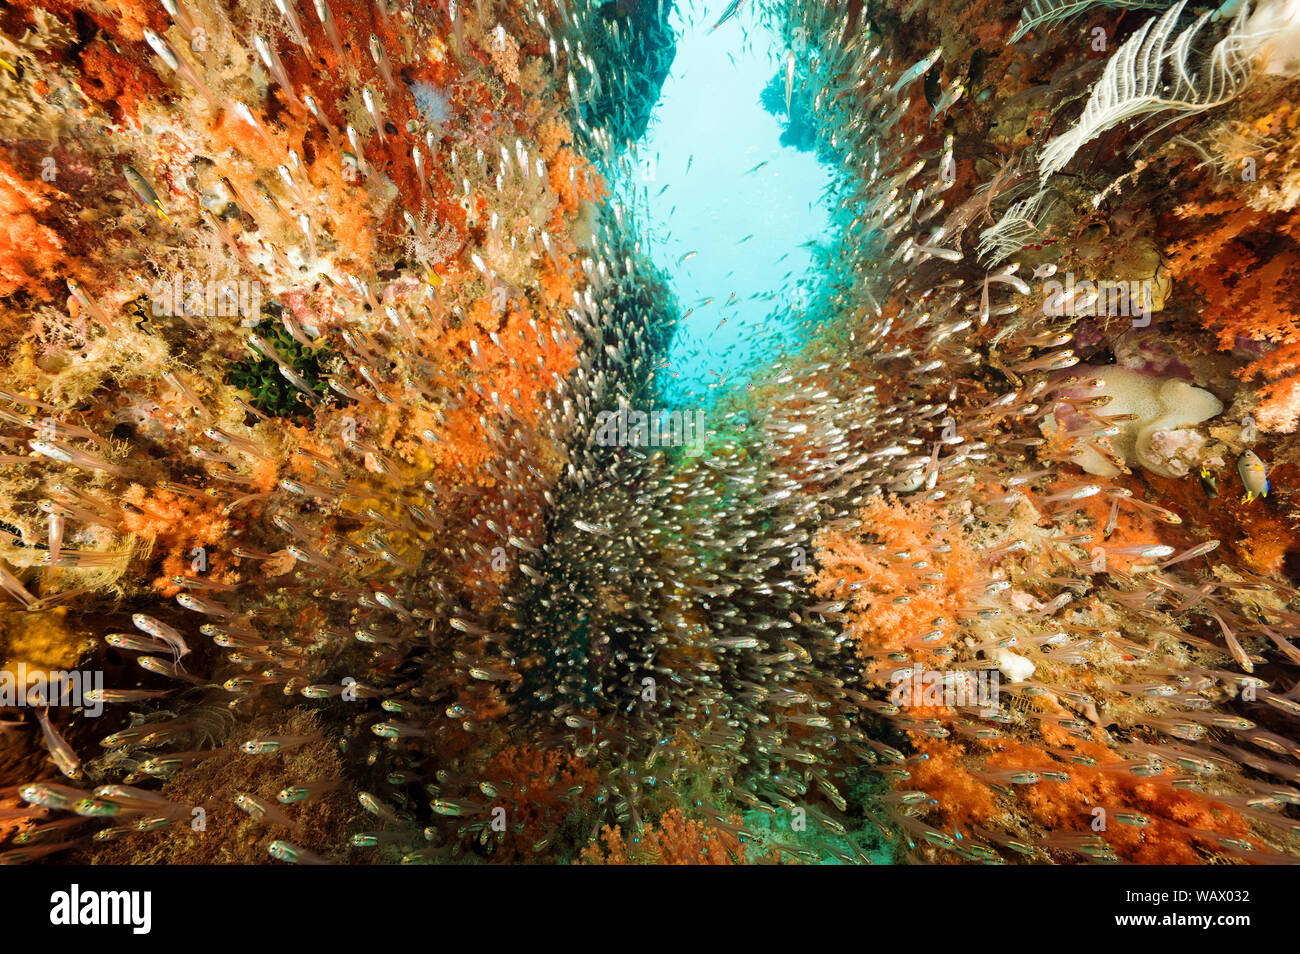 Reef scenic mit Weichkorallen, Siphonogorgia sp. und Kehrmaschinen, Parapriacanthus ransonneti, Raja Ampat Indonesien. Stockfoto